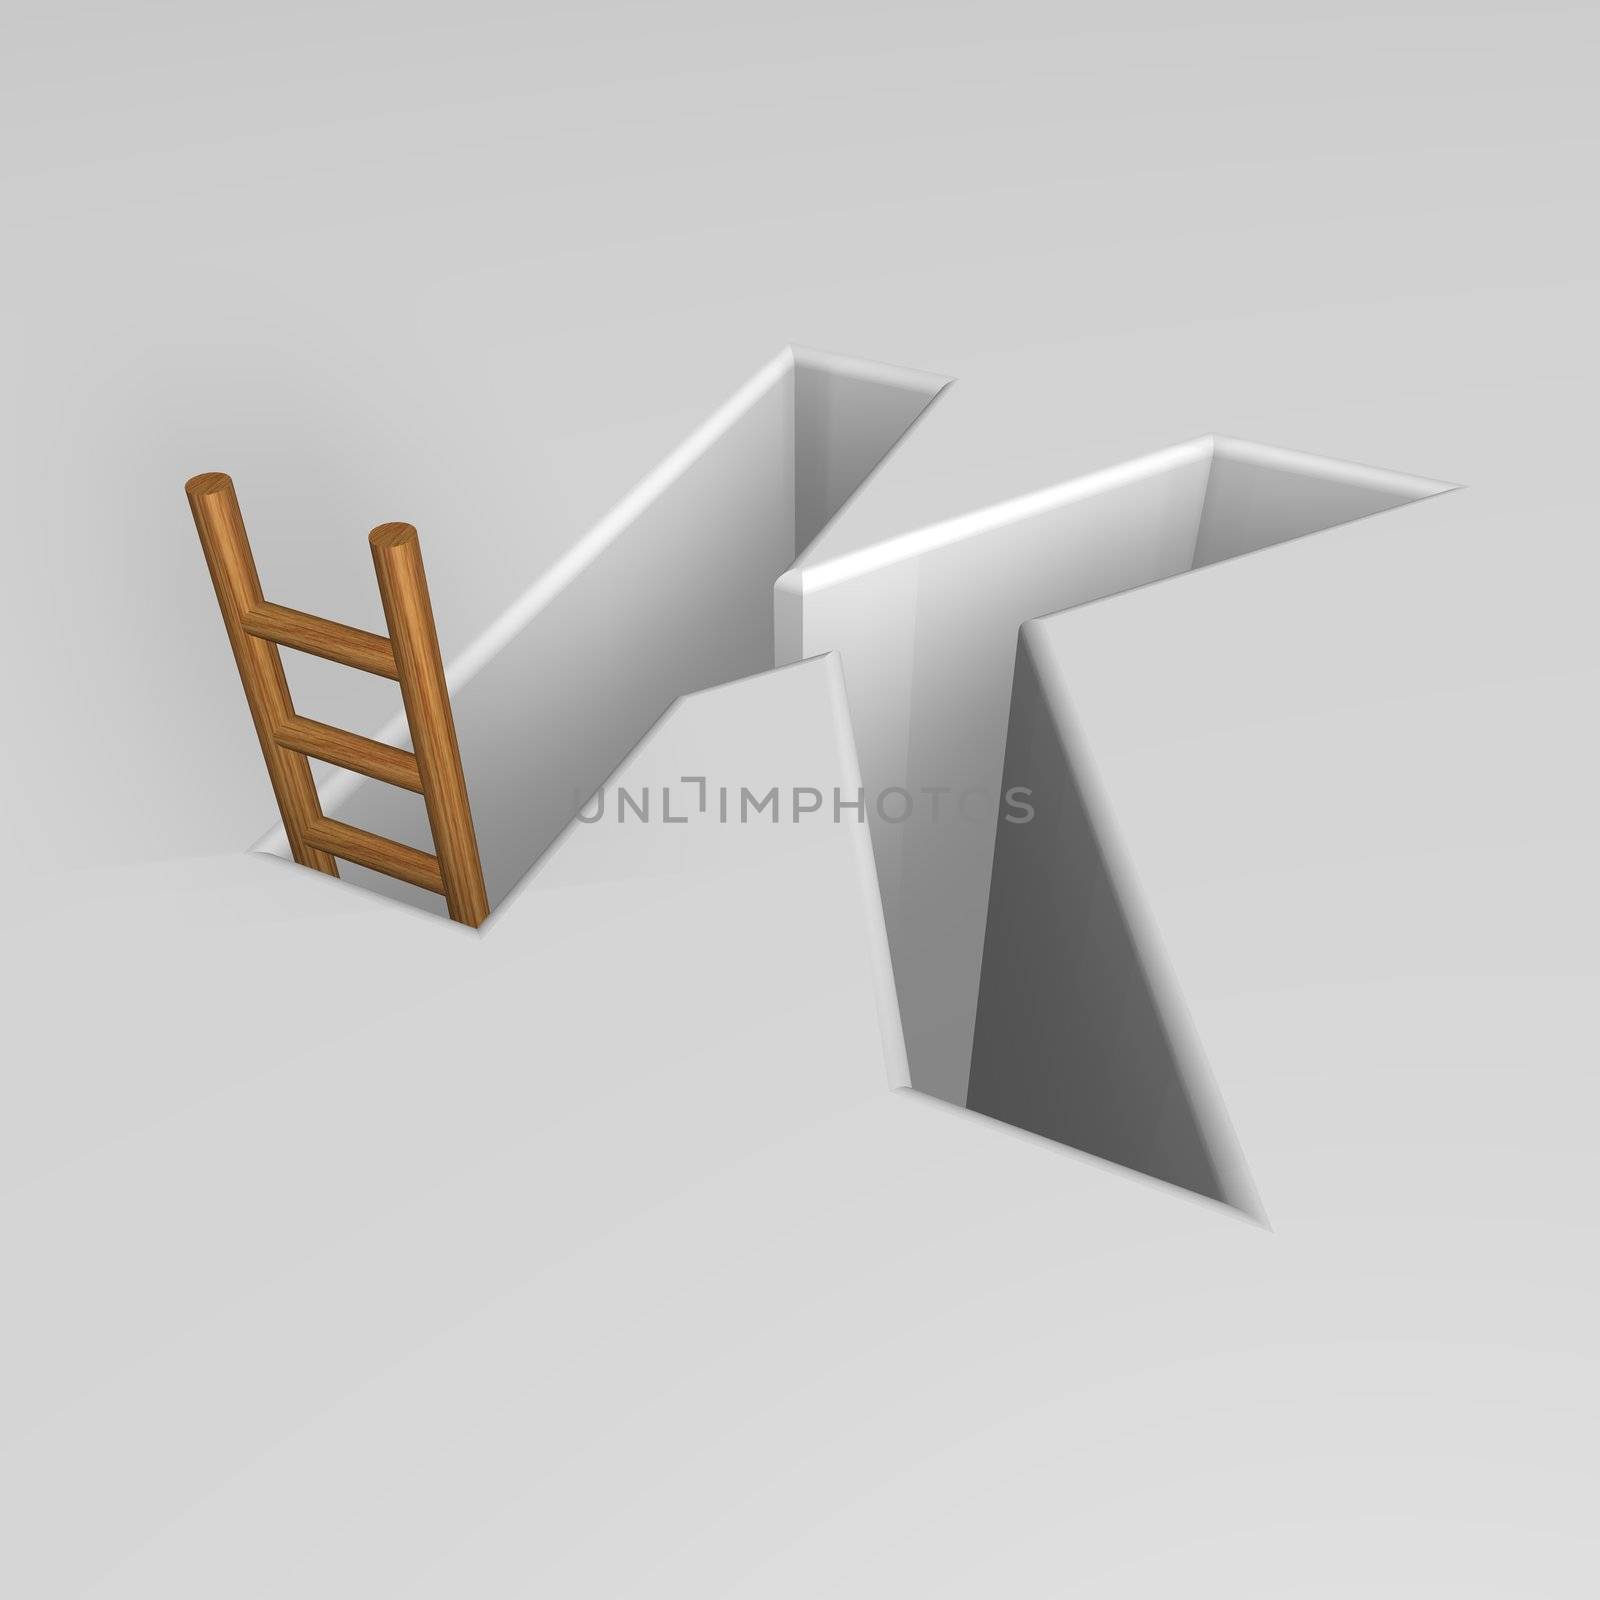 uppercase letter k shape hole with ladder - 3d illustration